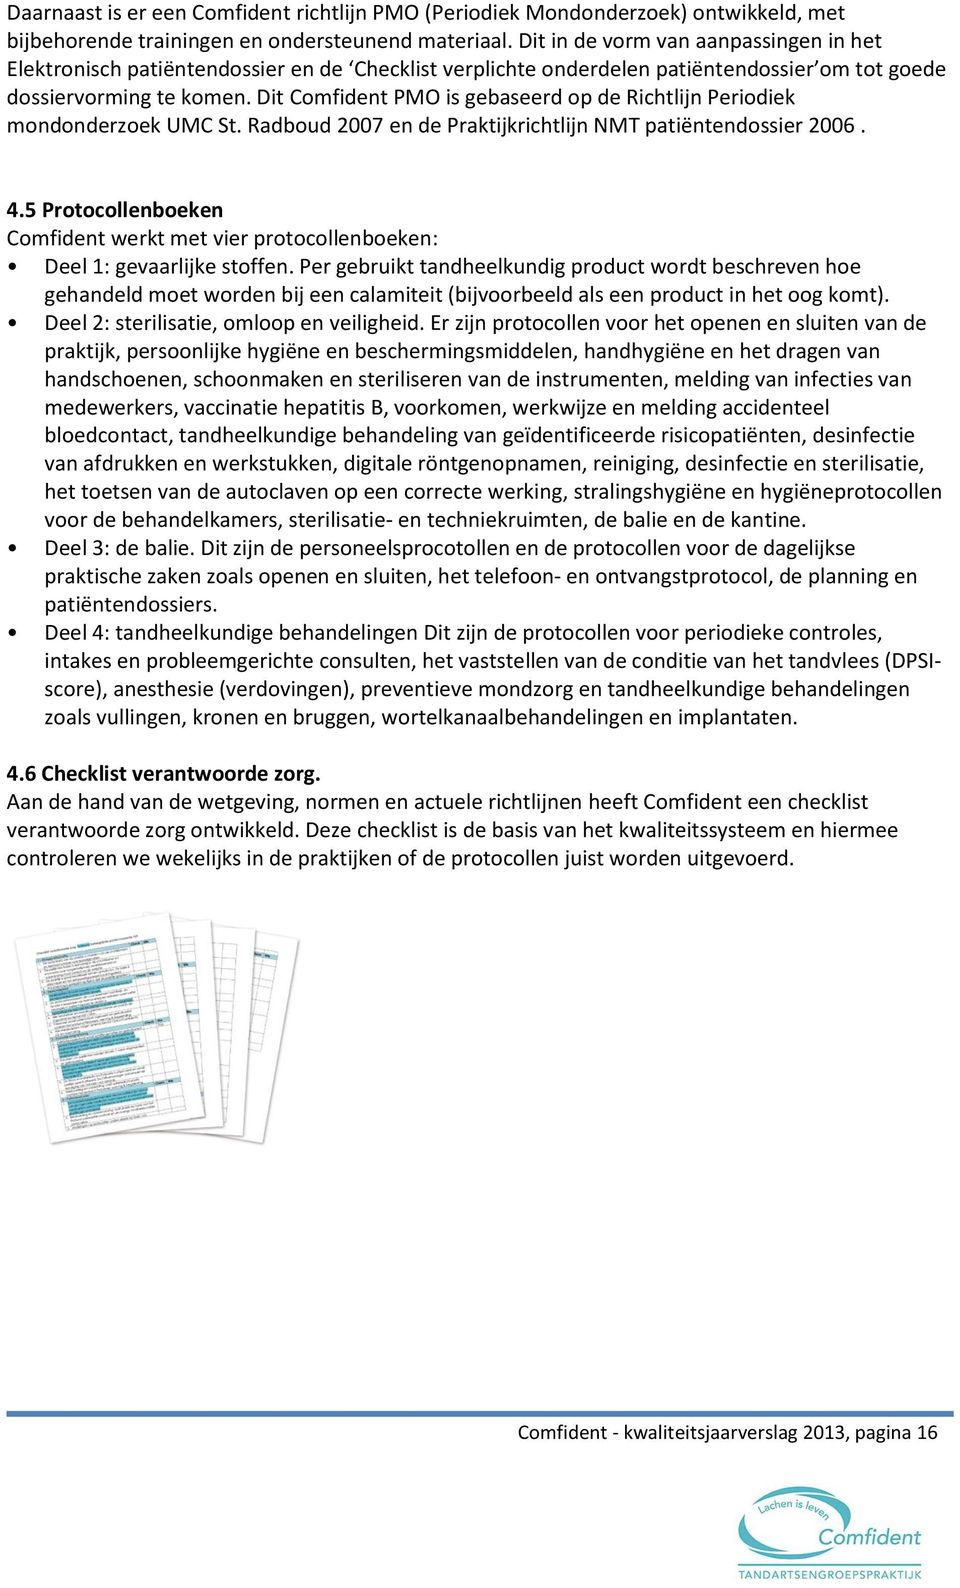 Dit Comfident PMO is gebaseerd op de Richtlijn Periodiek mondonderzoek UMC St. Radboud 2007 en de Praktijkrichtlijn NMT patiëntendossier 2006. 4.